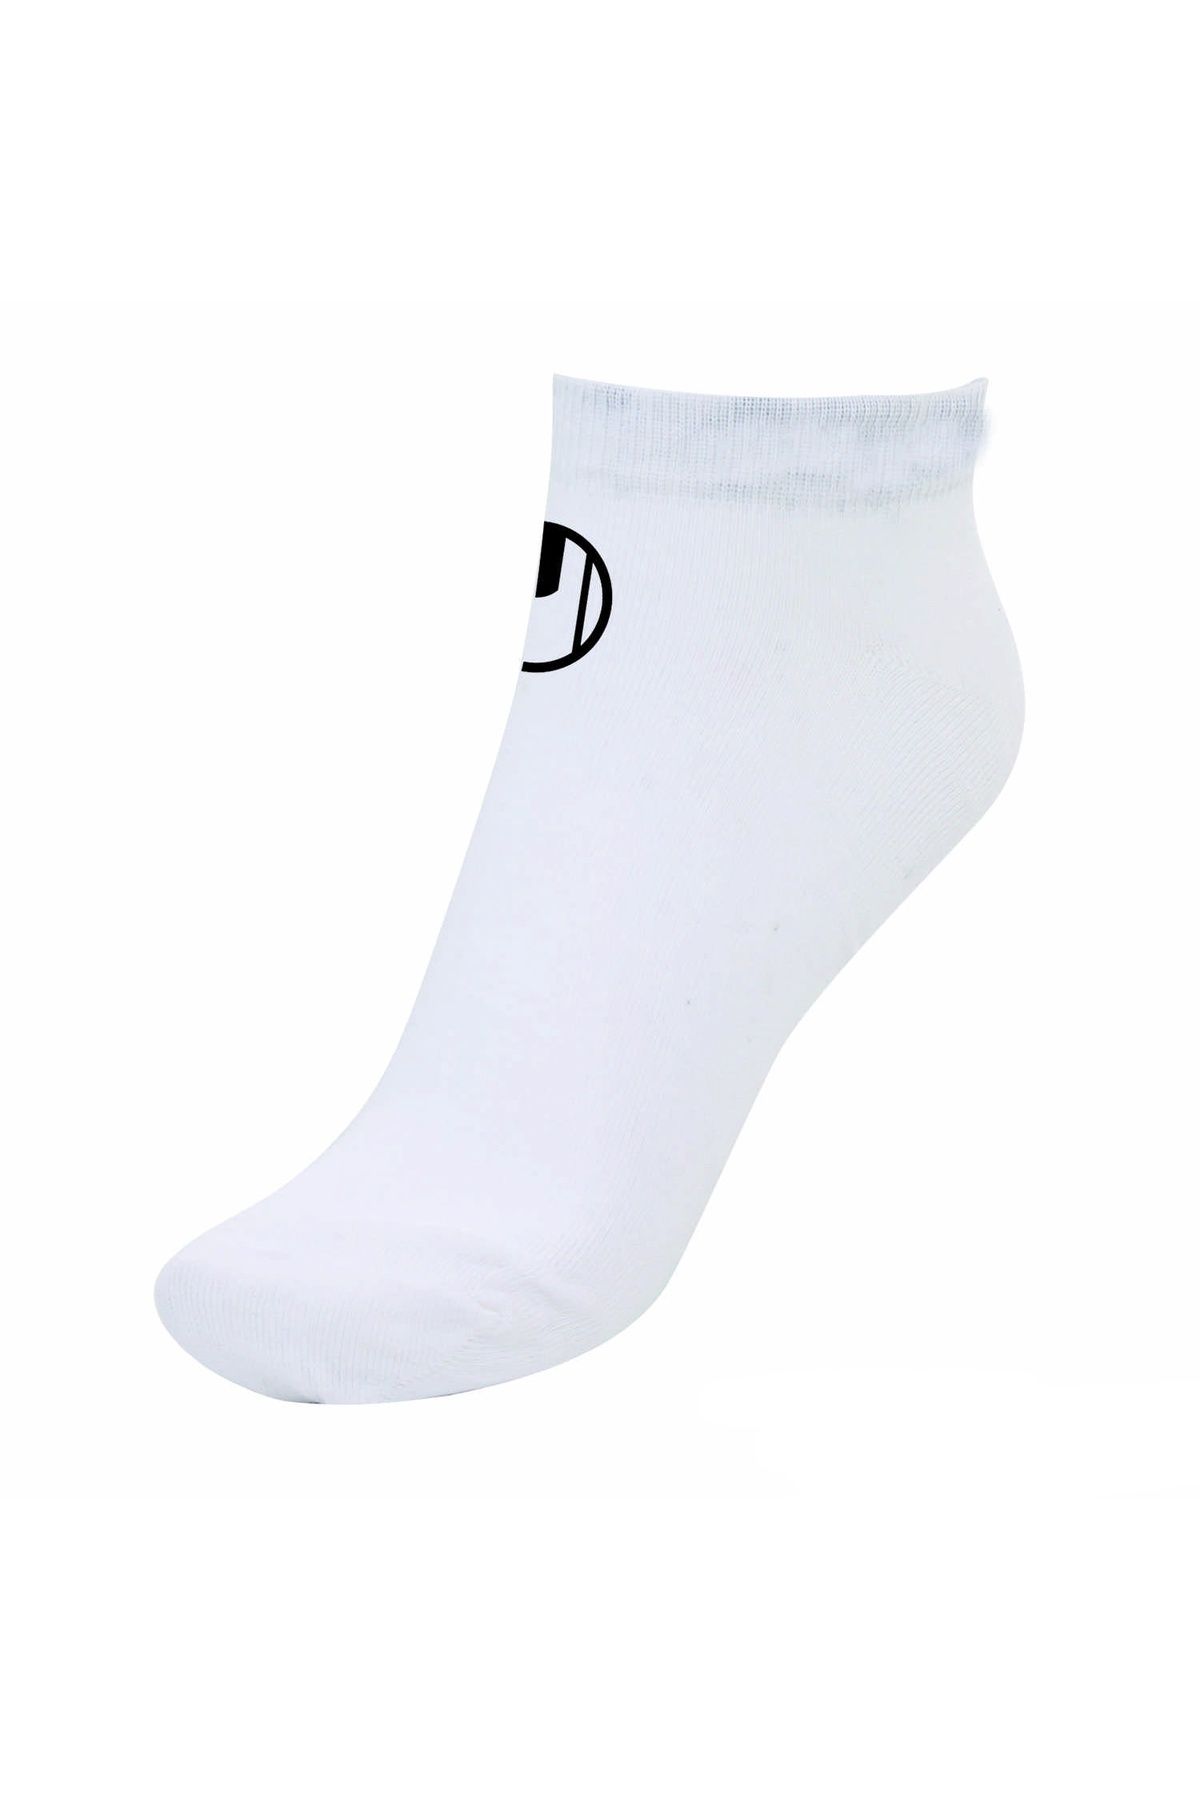 uhlsport 1003016-b Patik Çorap Unisex Çorap